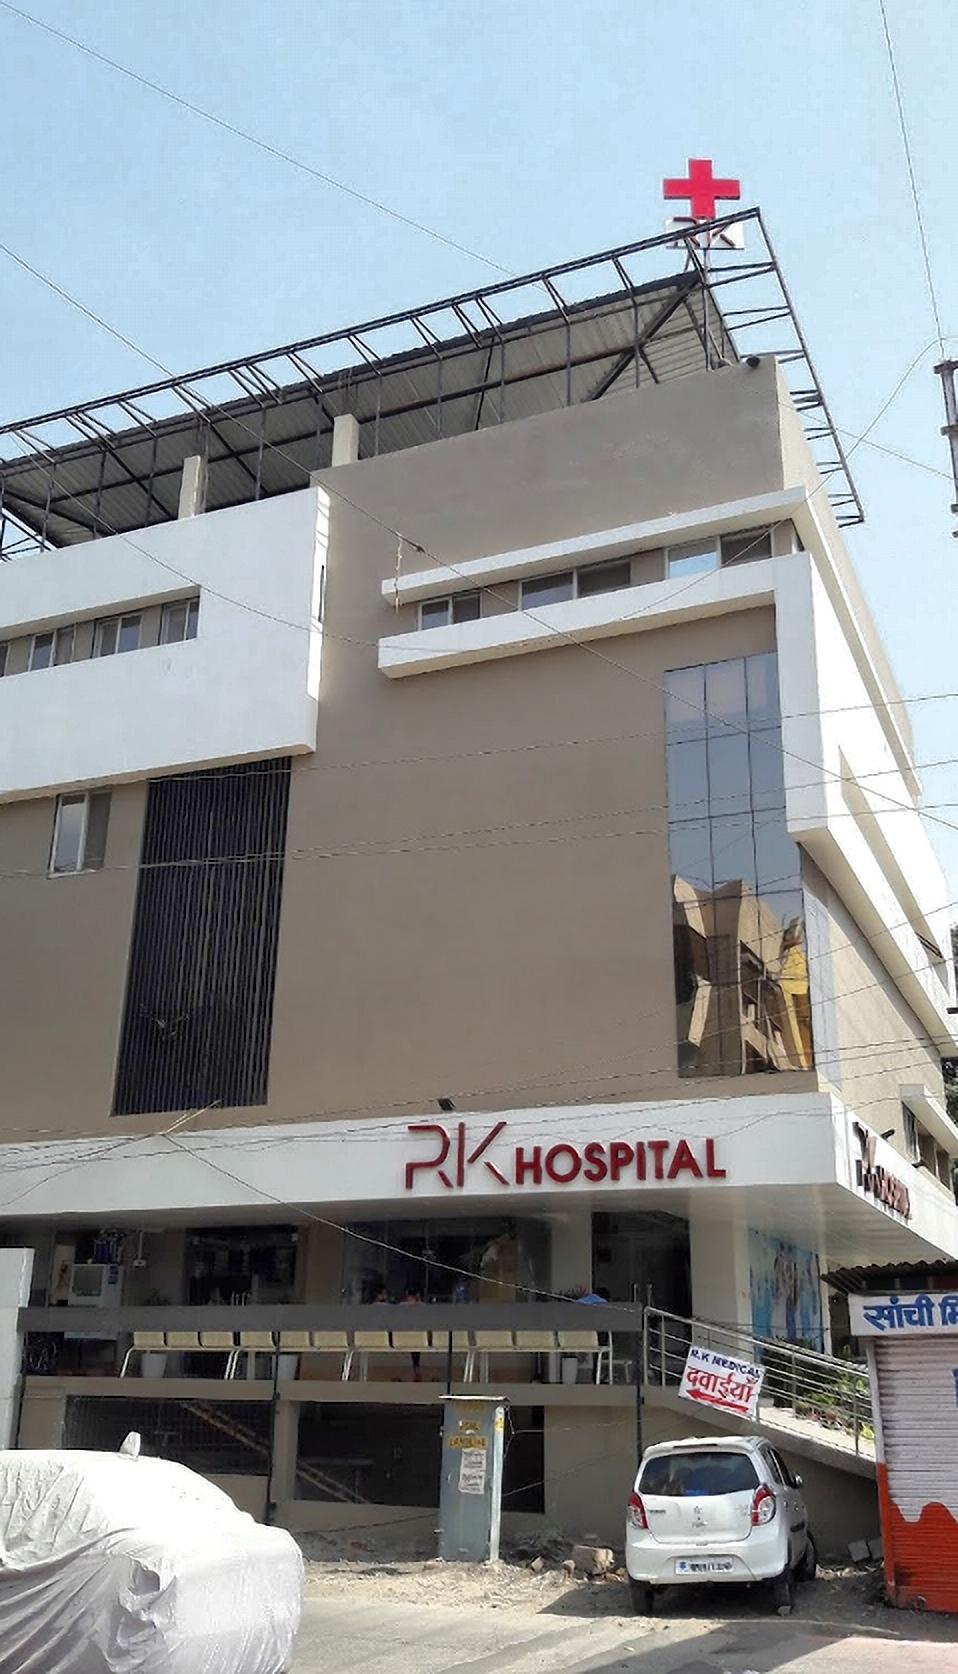 R K Hospital